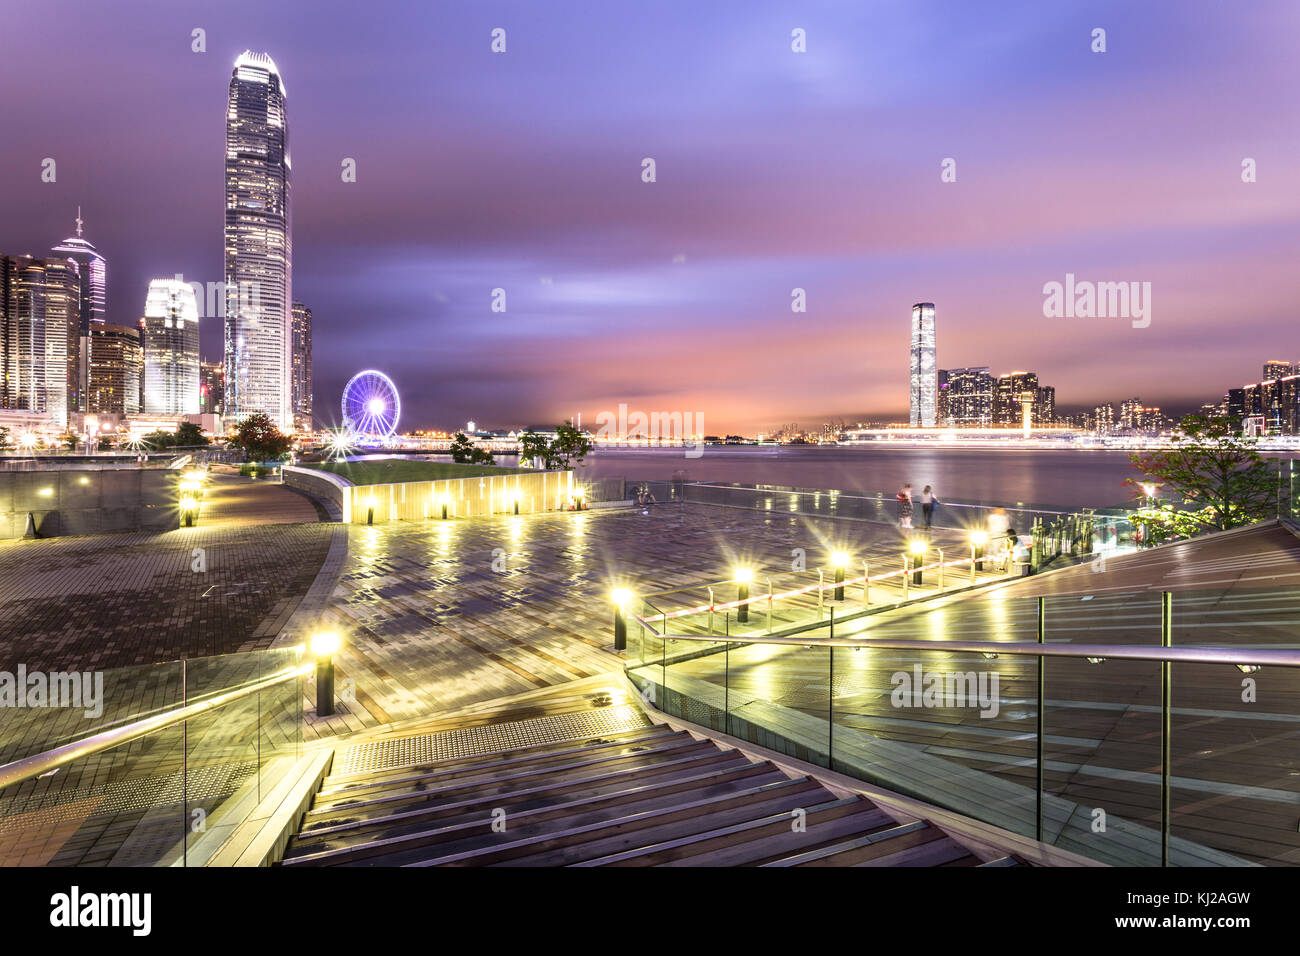 Superbe vue de nuit sur la célèbre île de Hong kong central business district skyline du parc le long du port de Victoria avec l'autre sur Kowloon Banque D'Images